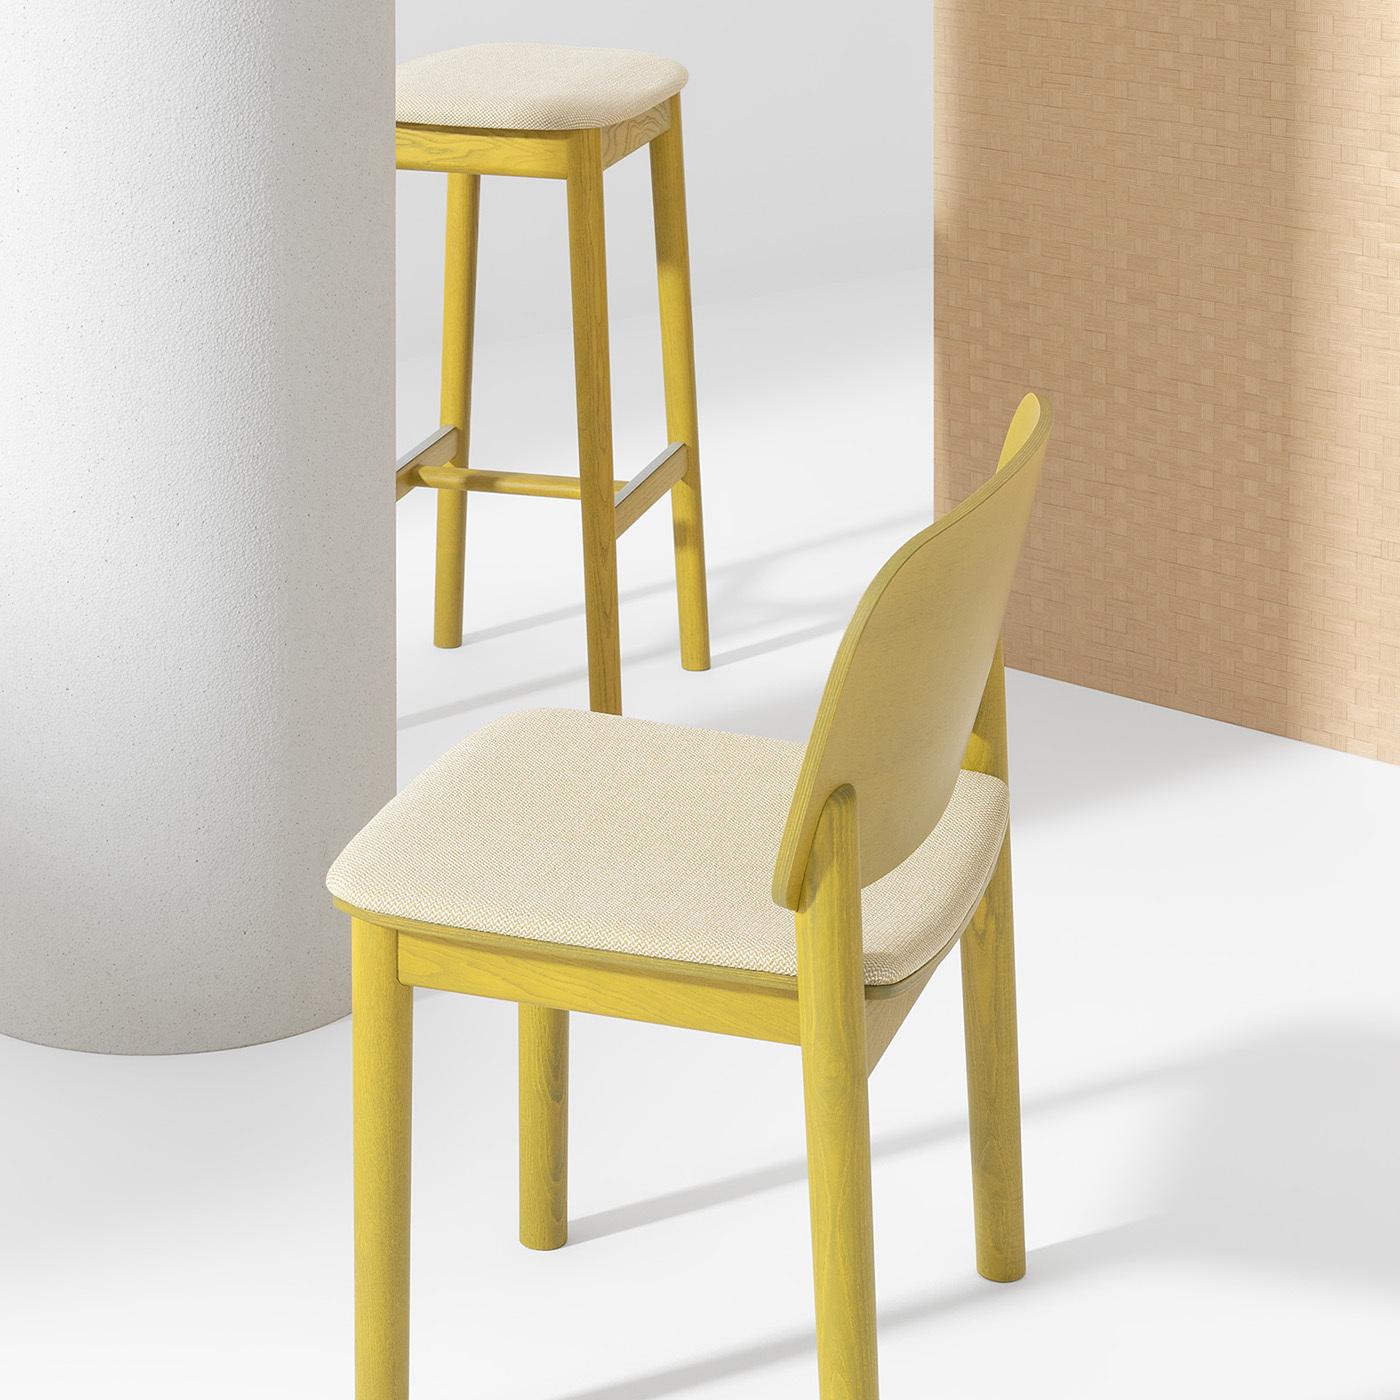 Cette chaise raffinée conçue par Harri Koskinen souligne le charme de la simplicité formelle grâce à un choix harmonieux de tons chromatiques. Le frêne de première qualité, laqué dans un ton curry vif, est utilisé pour la structure sobre qui